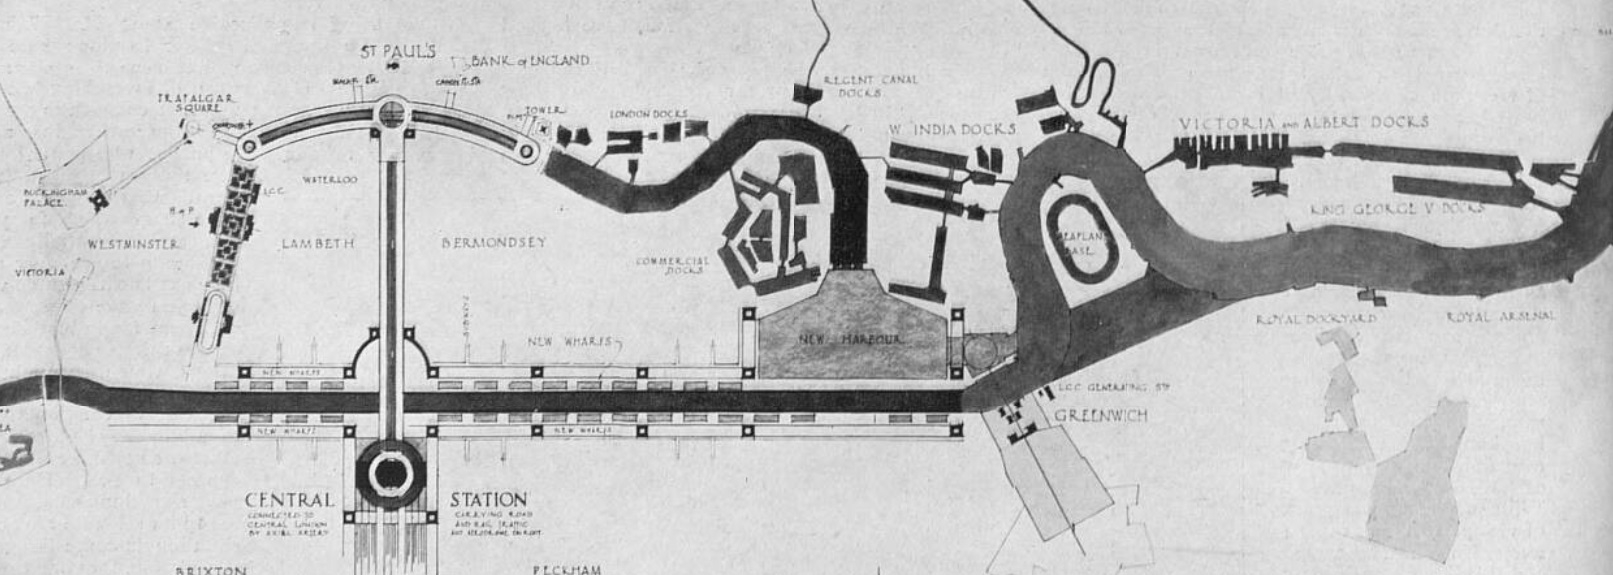 1930's Thames straightening plans.jpg